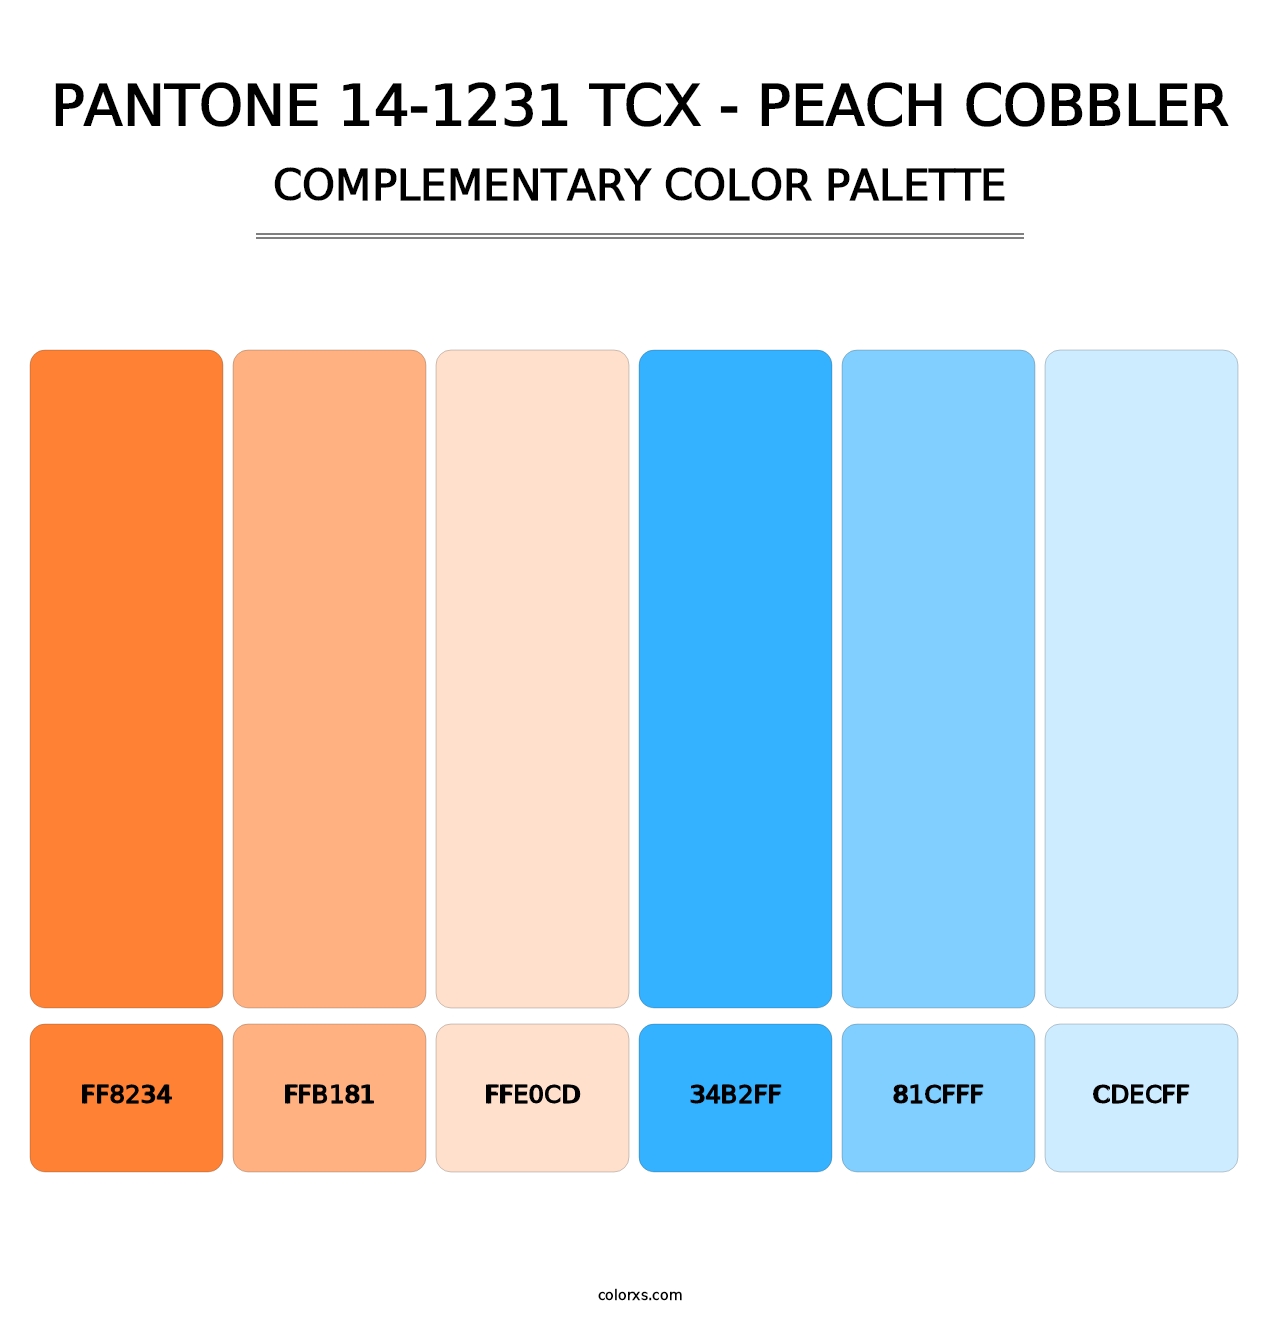 PANTONE 14-1231 TCX - Peach Cobbler - Complementary Color Palette